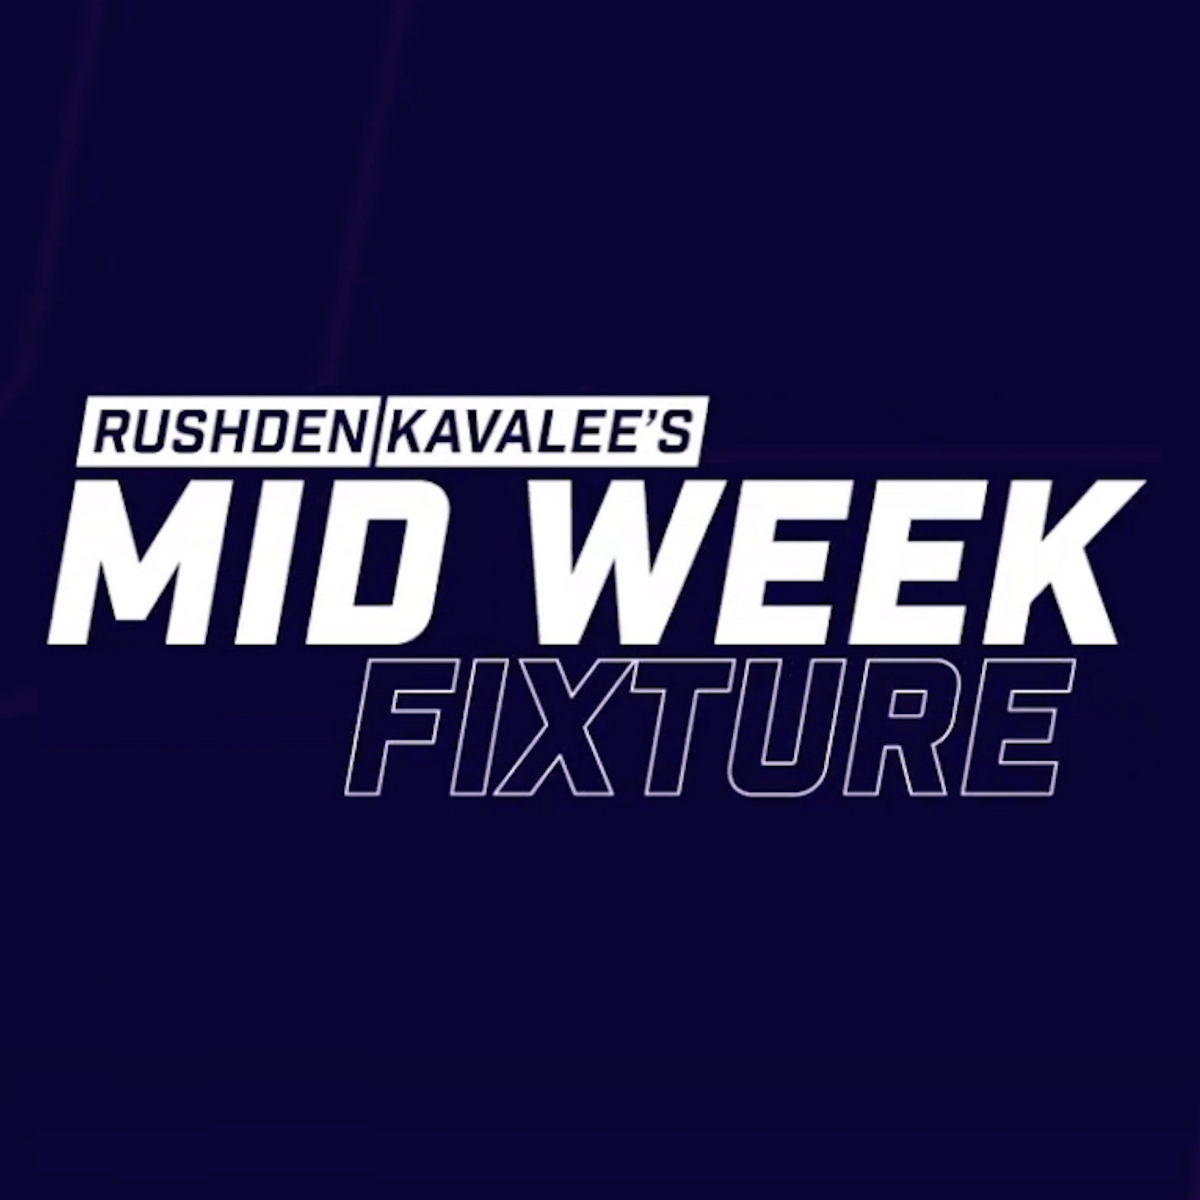 Rushden / Kavalee's Mid Week Fixture - 21 October 2020